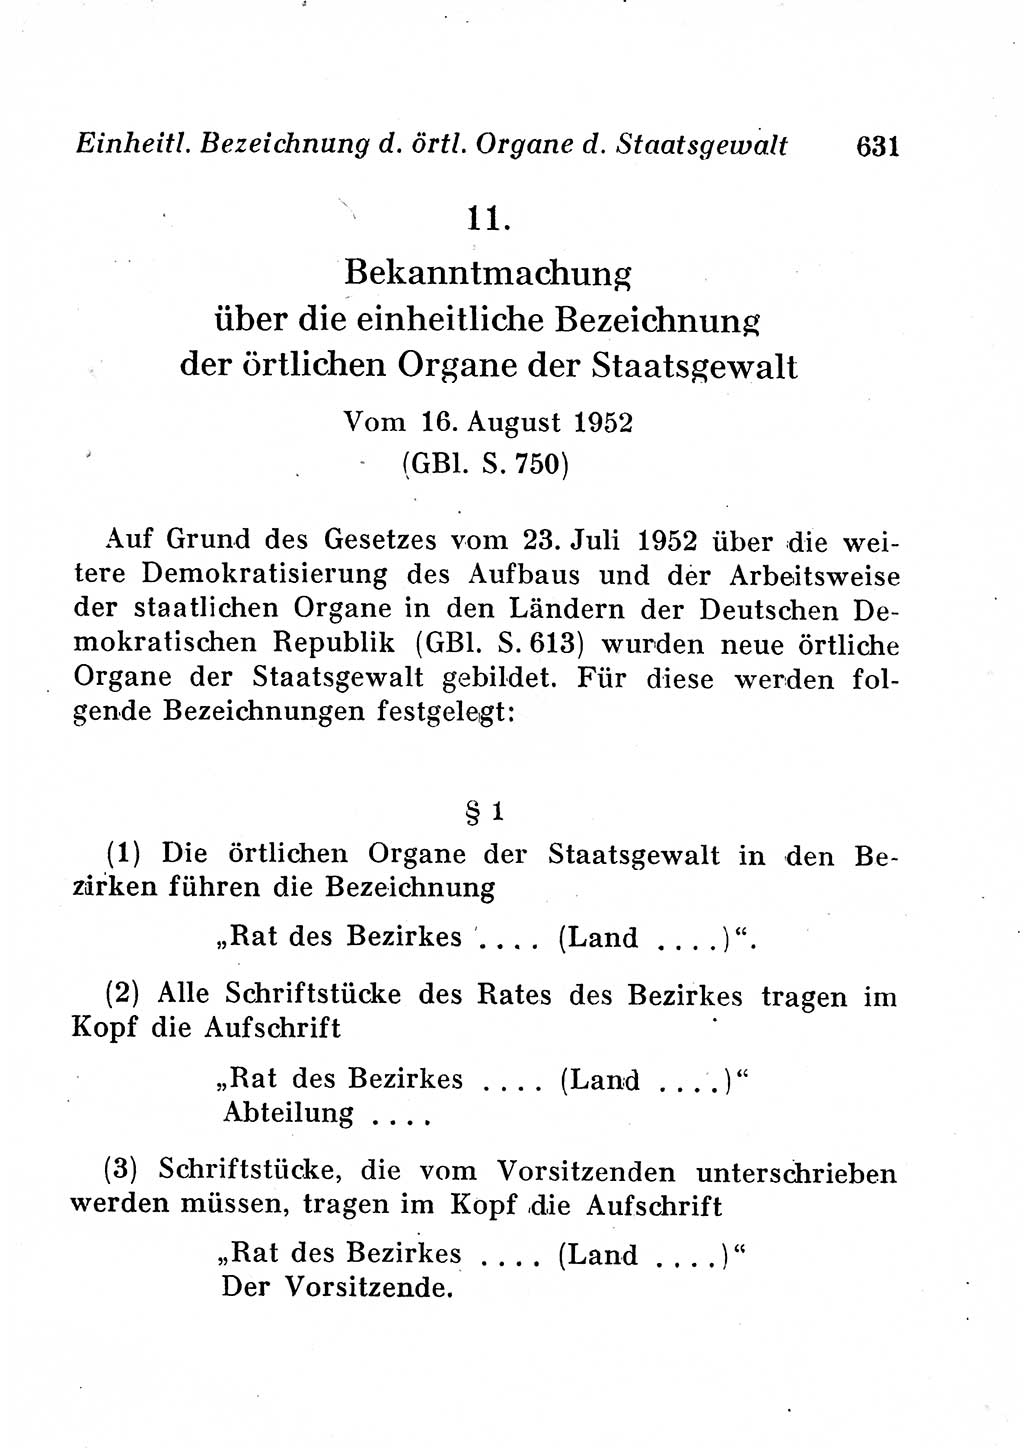 Staats- und verwaltungsrechtliche Gesetze der Deutschen Demokratischen Republik (DDR) 1958, Seite 631 (StVerwR Ges. DDR 1958, S. 631)